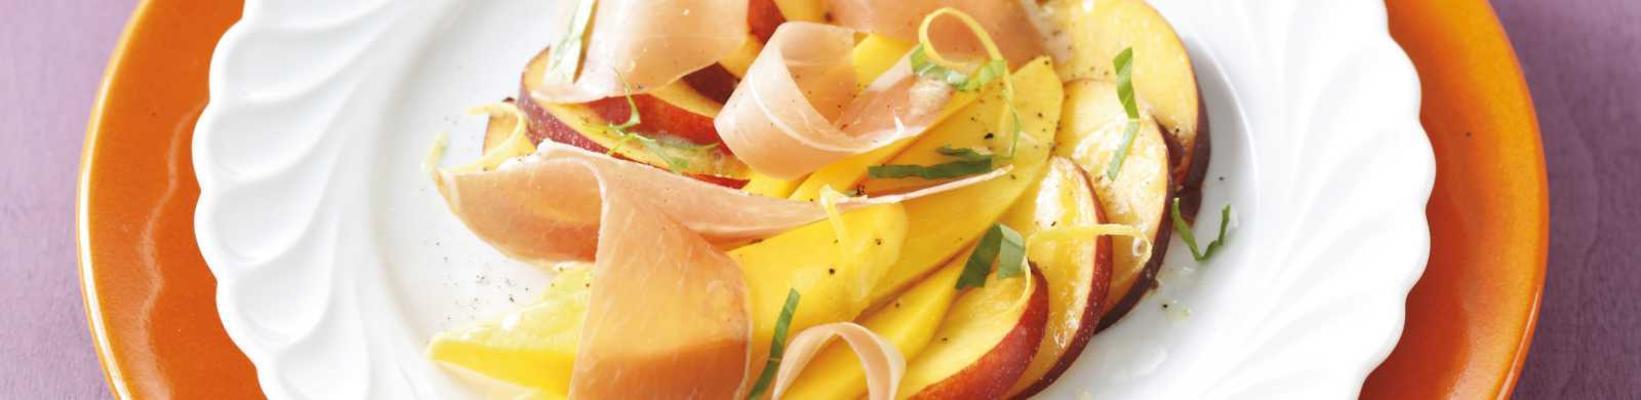 orange fruit salad with parma ham